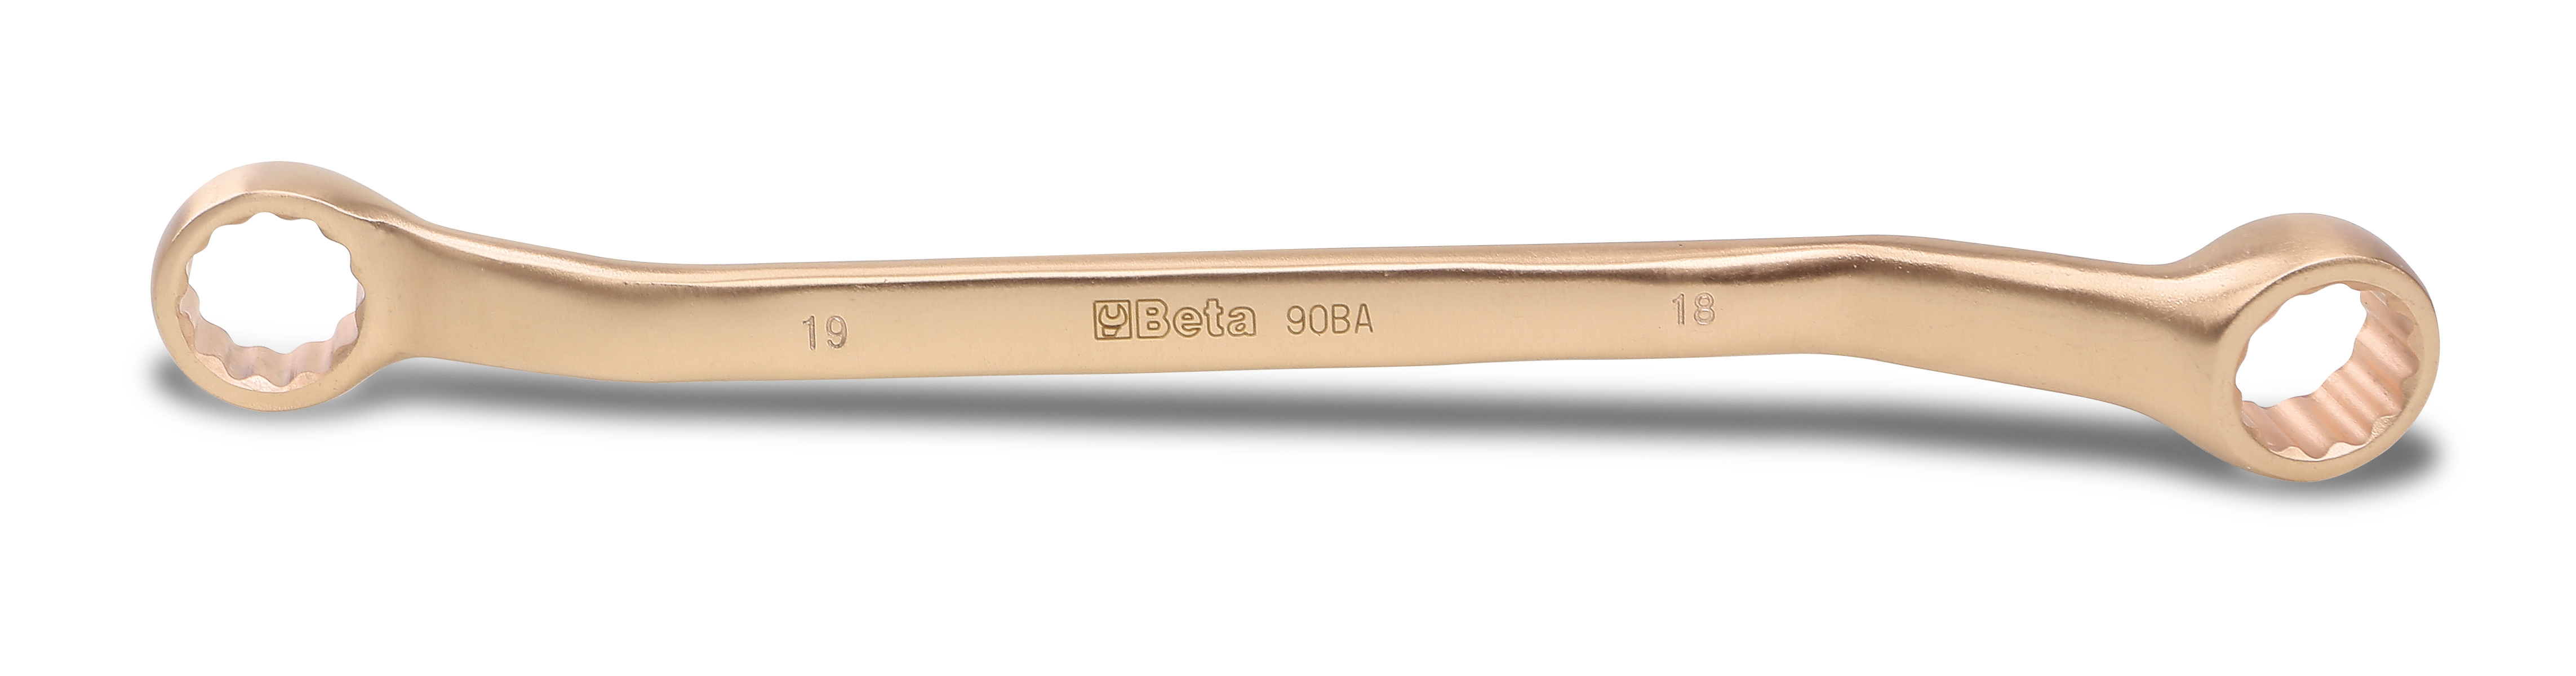 Πολύγωνο Κλειδί 18x19mm Αντισπινθηρικό 90BA BETA 